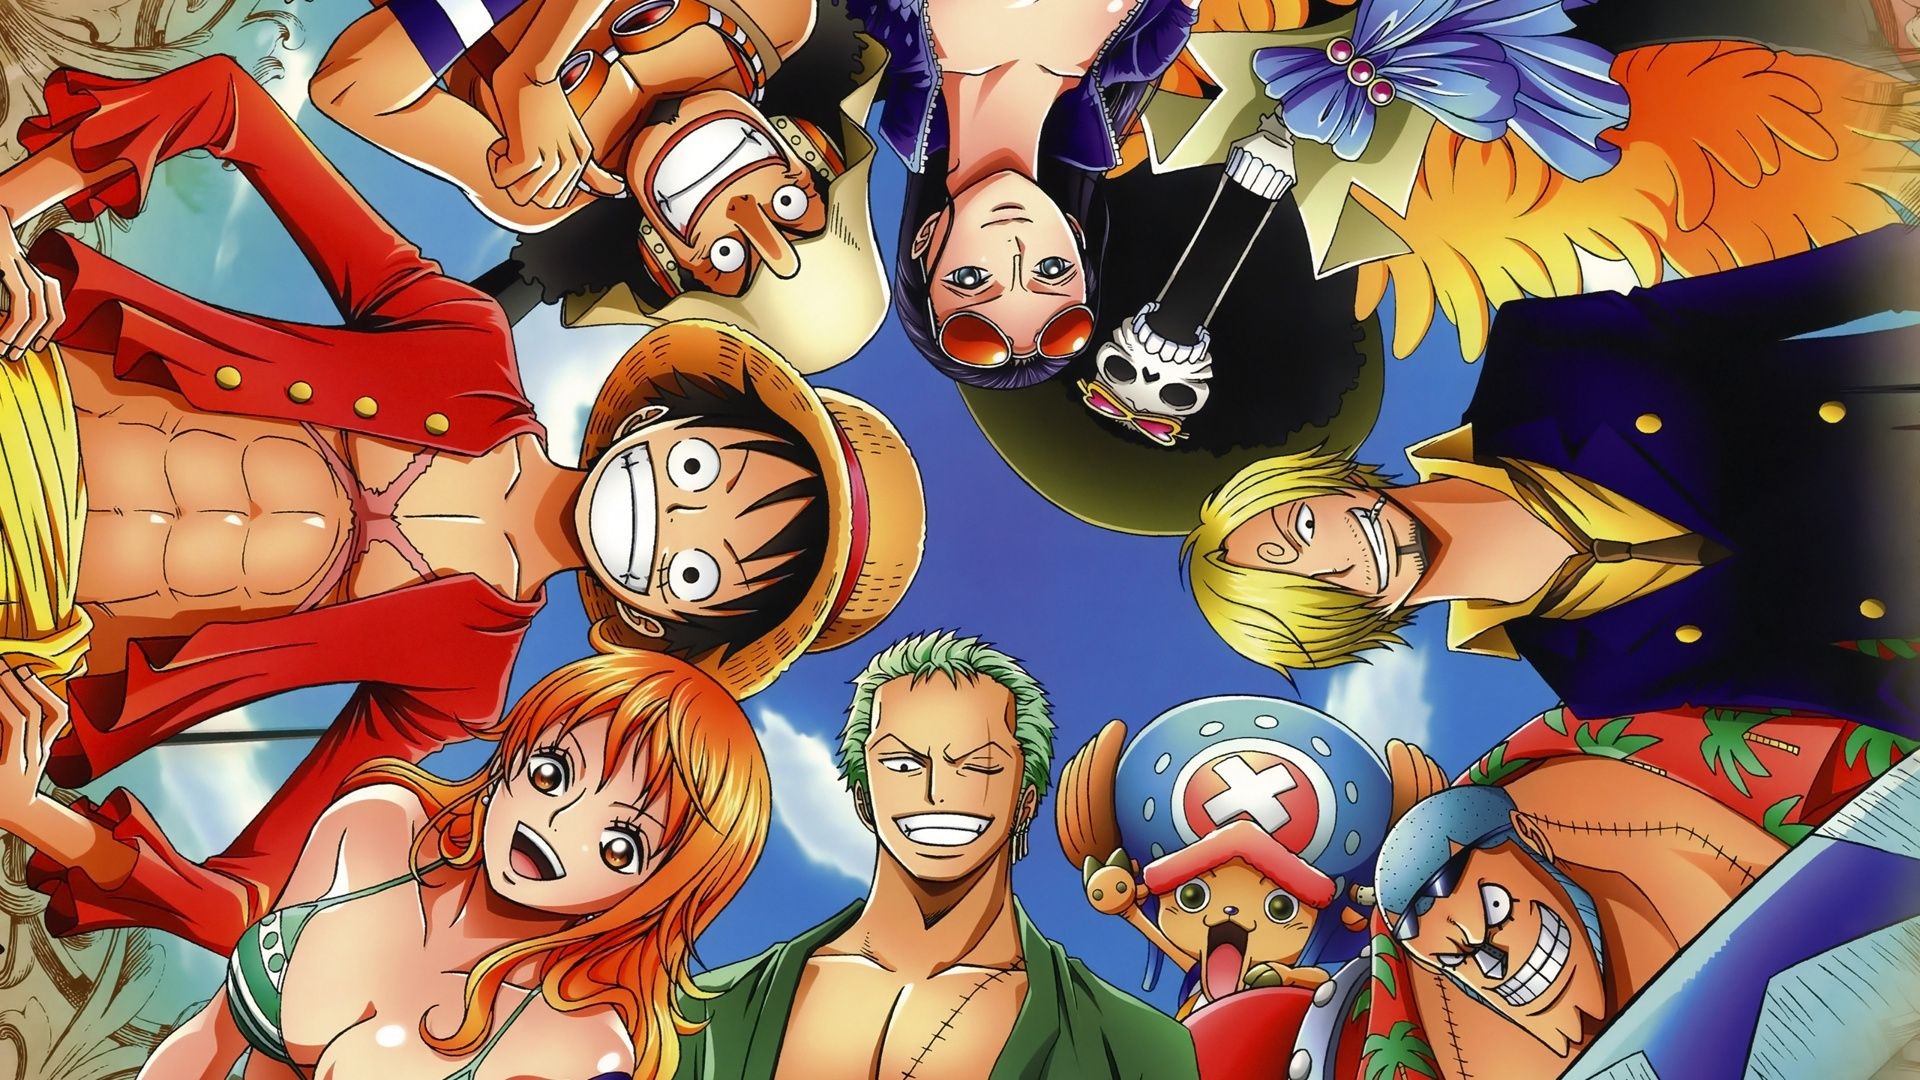 Hình Ảnh Anime One Piece: Các fan hâm mộ One Piece không thể bỏ qua những hình ảnh anime đầy màu sắc và hấp dẫn của bộ anime này. Với những khoảnh khắc đầy cảm xúc và chi tiết tuyệt vời, bạn sẽ không muốn bỏ lỡ bất kỳ hình ảnh Anime One Piece nào. Sẵn sàng khám phá thế giới phiêu lưu đầy kịch tính của Luffy và đồng đội ngay bây giờ!